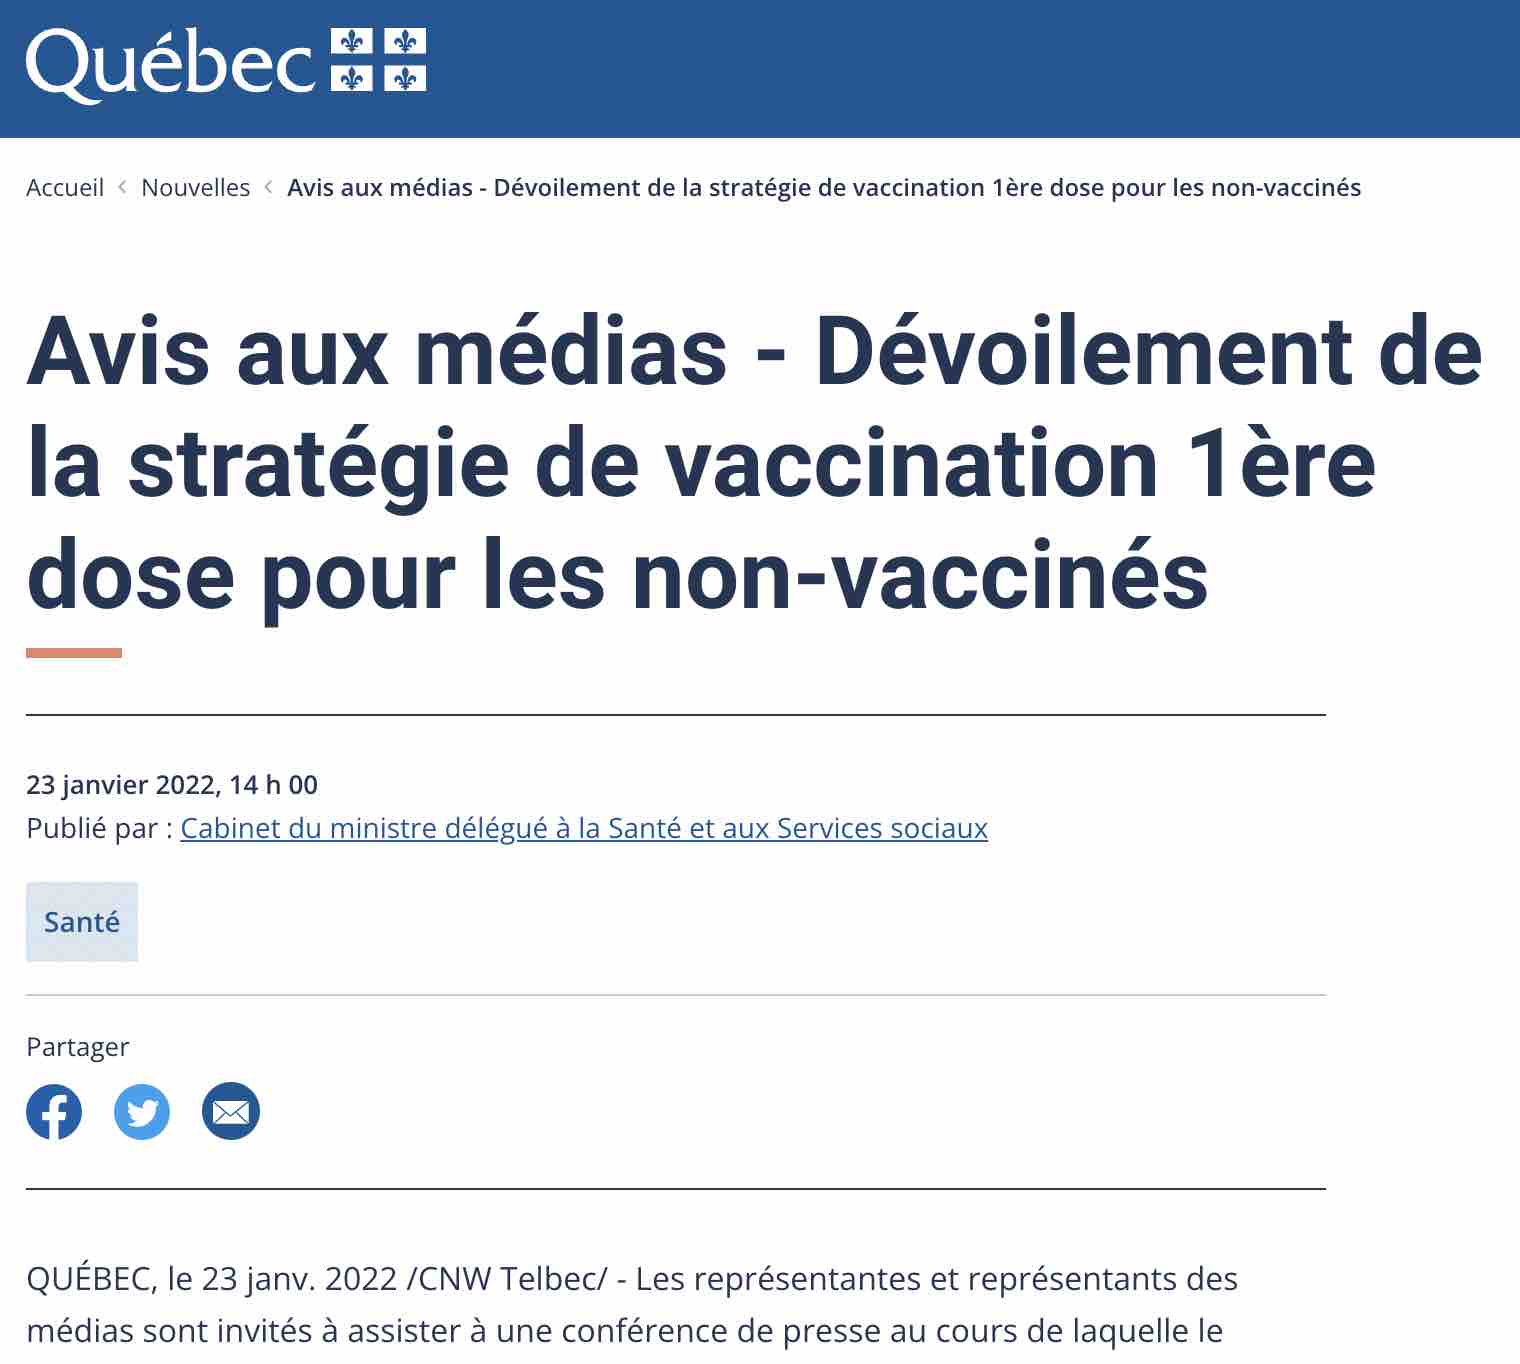 vaccination-1ere-dose-aux-non-vaccines.jpg